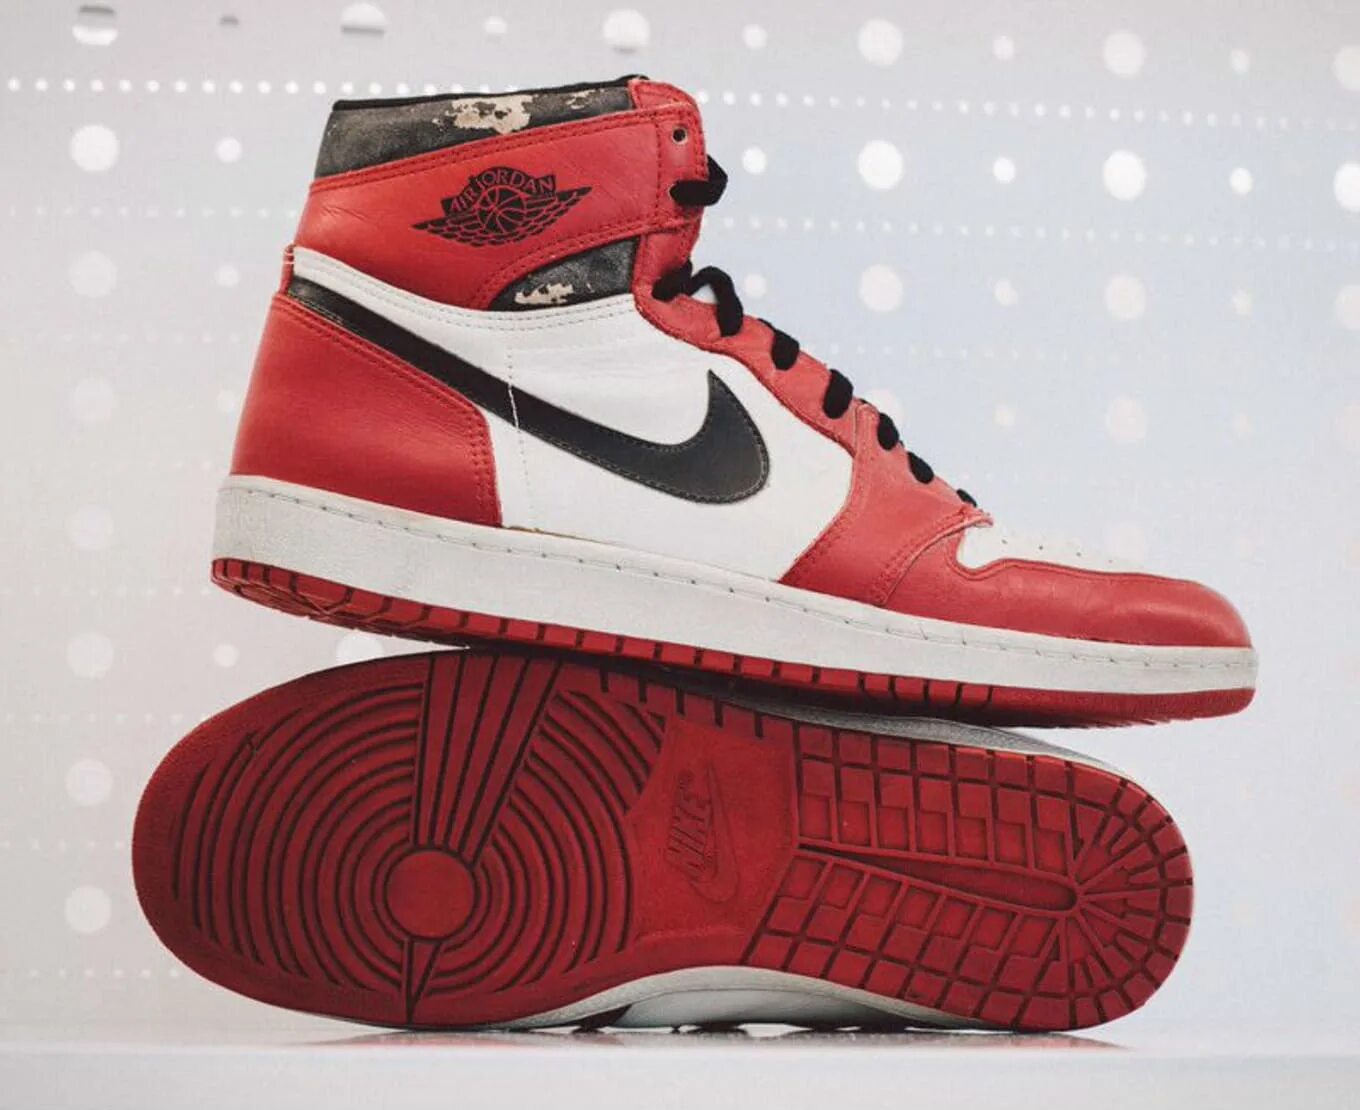 Джорданы 1 оригинал. Nike Air Jordan 1 Original. Air Jordan 1 1985. Nike Air Jordan 1 1985. Nike Jordan 1 оригинал.